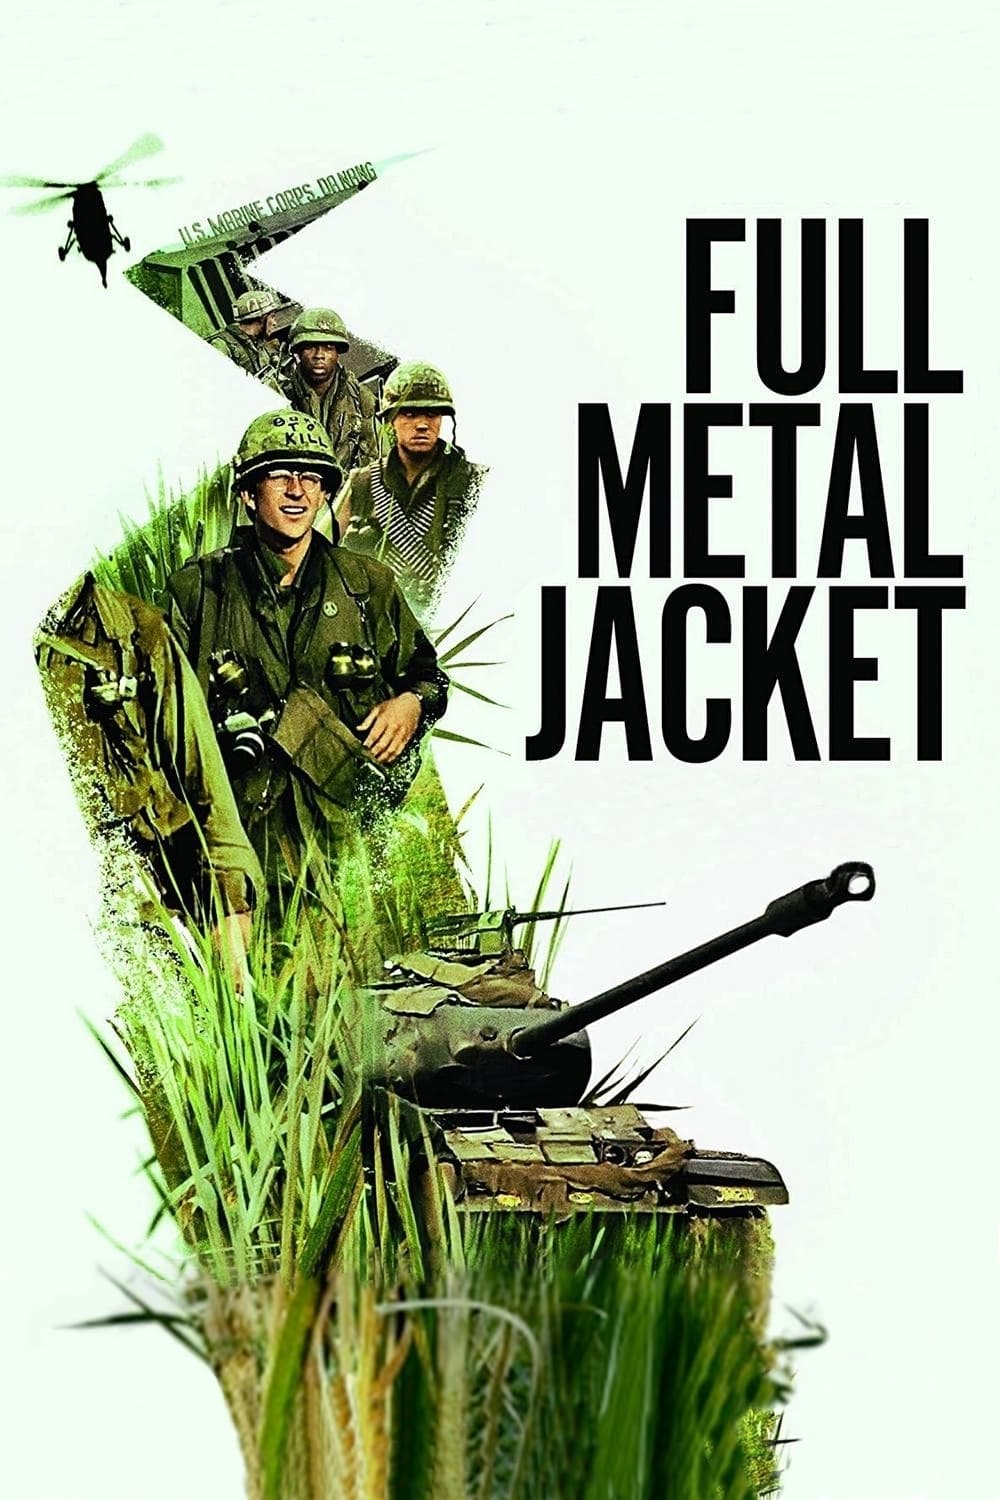 دانلود فیلم Full Metal Jacket 1987 با دوبله فارسی